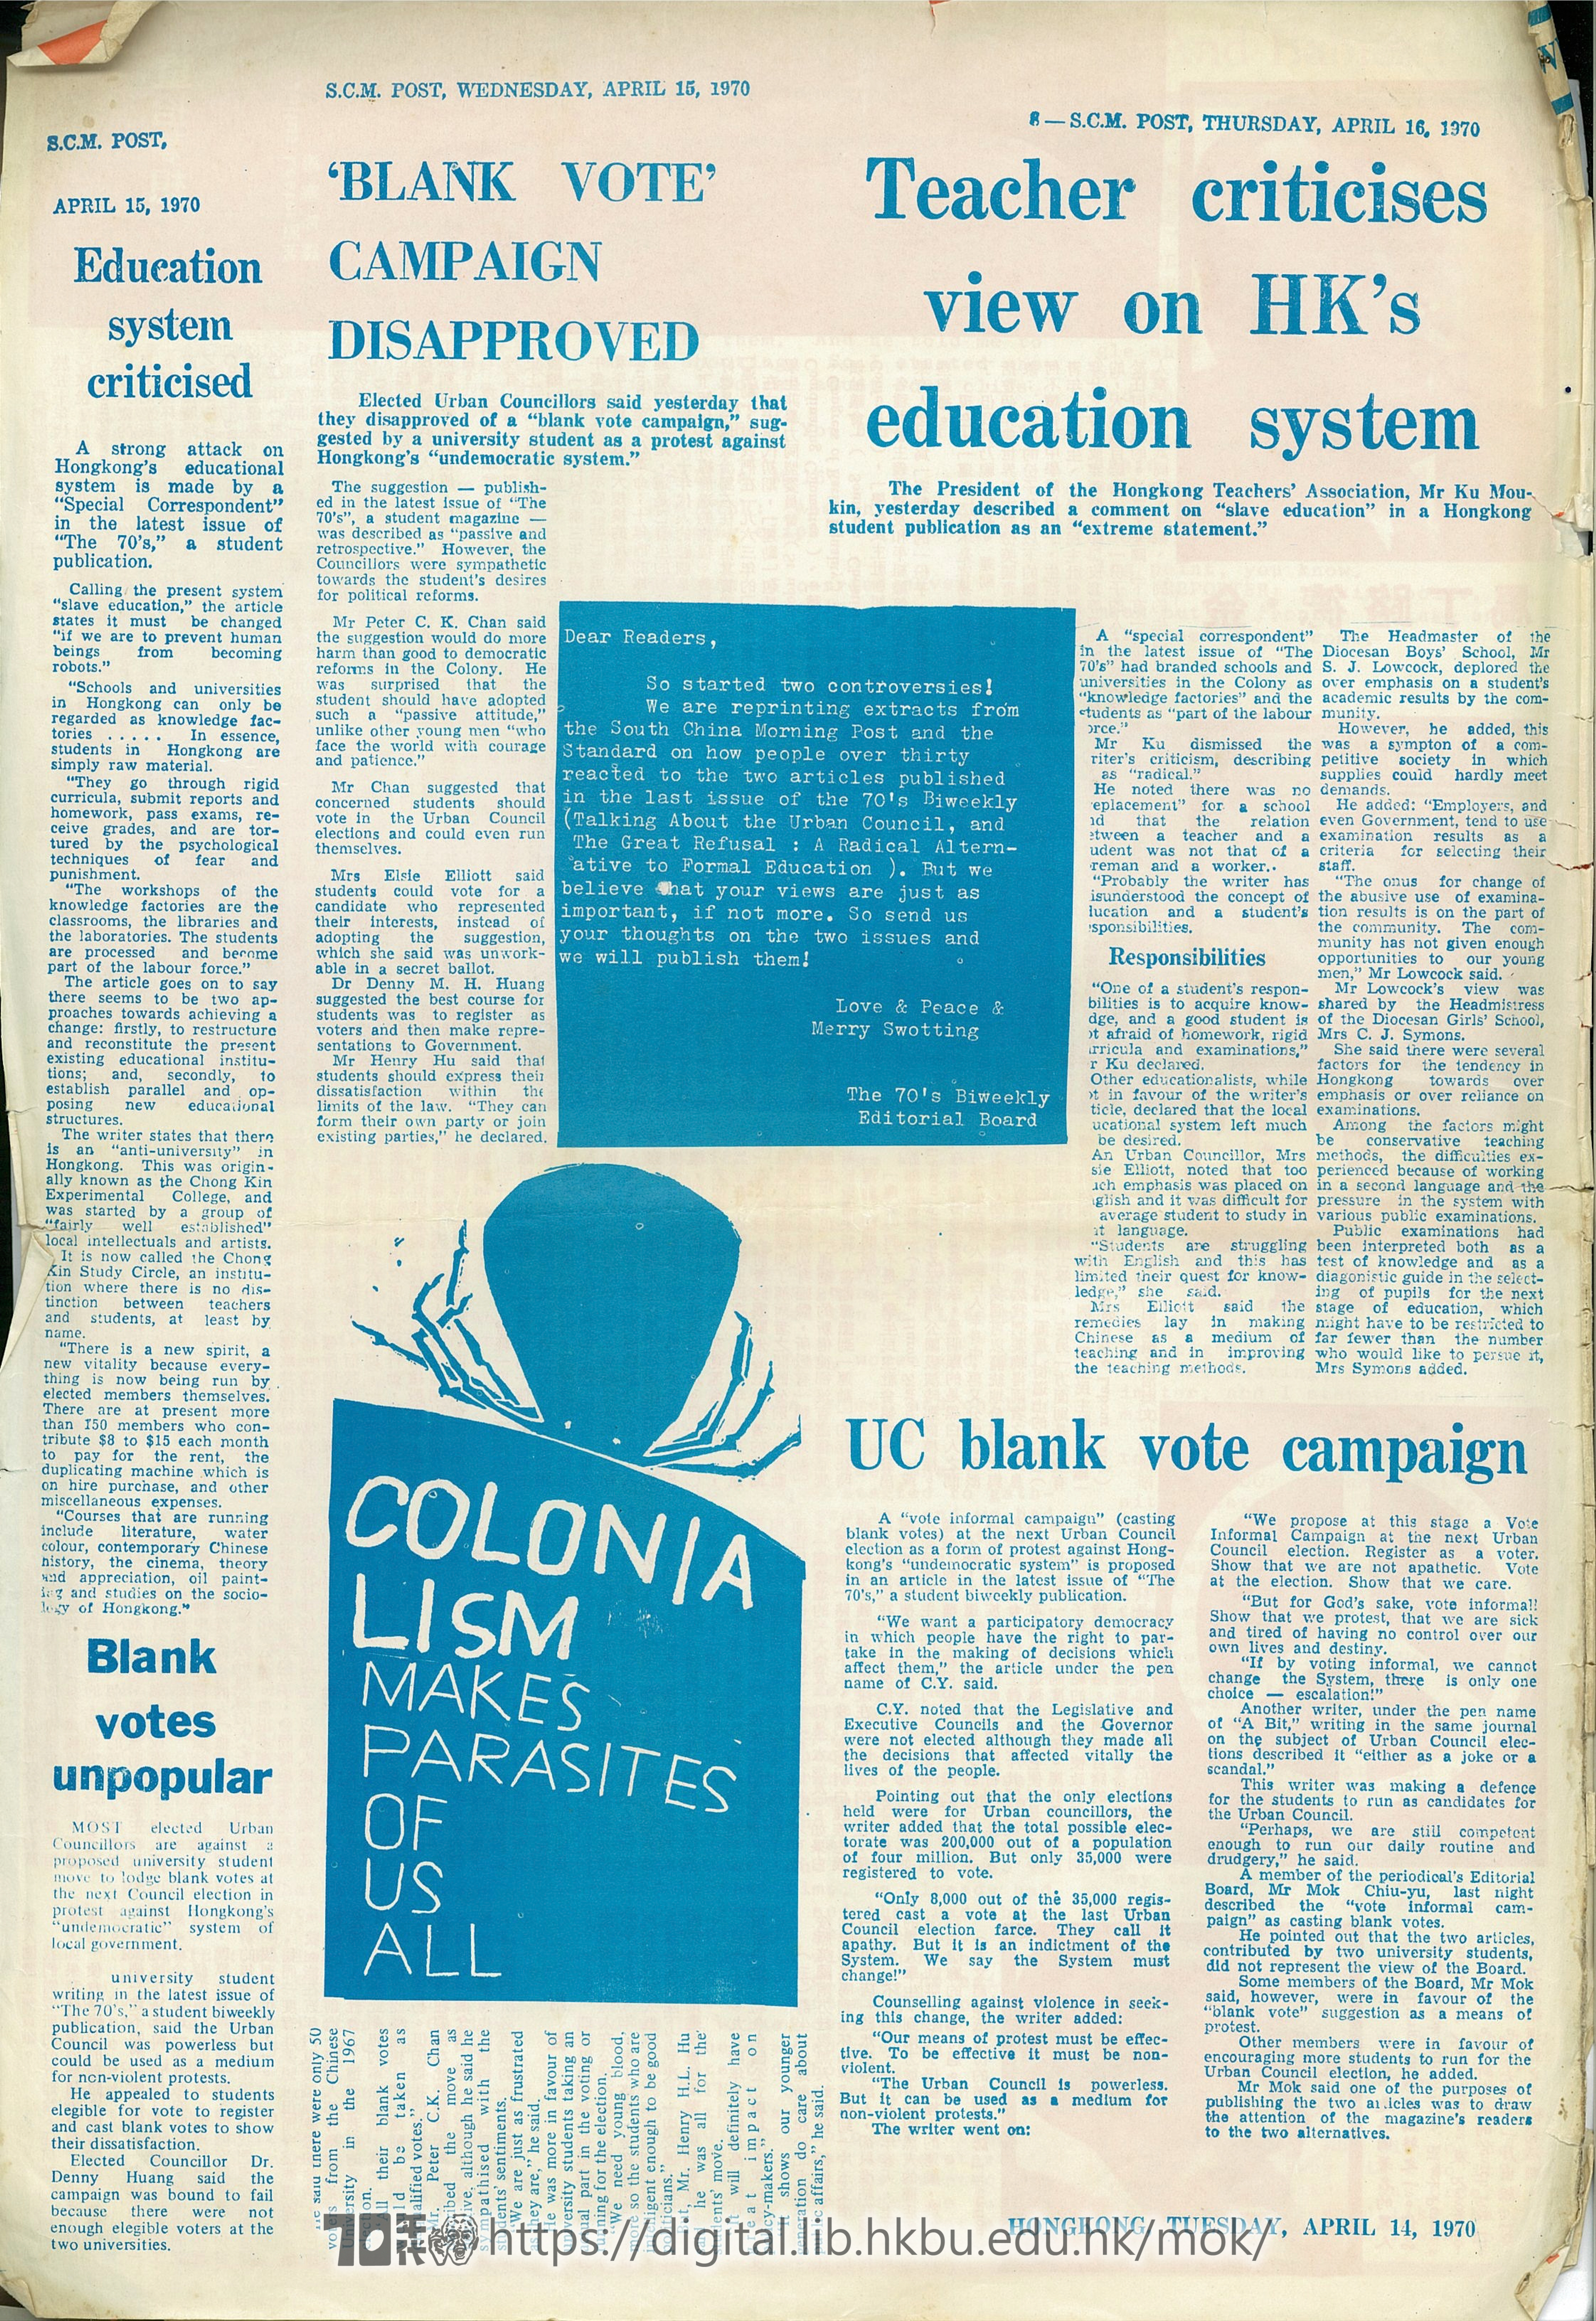  7 反對‘黑人投票運動’ S.C.M. POST APRIL,15,1970 